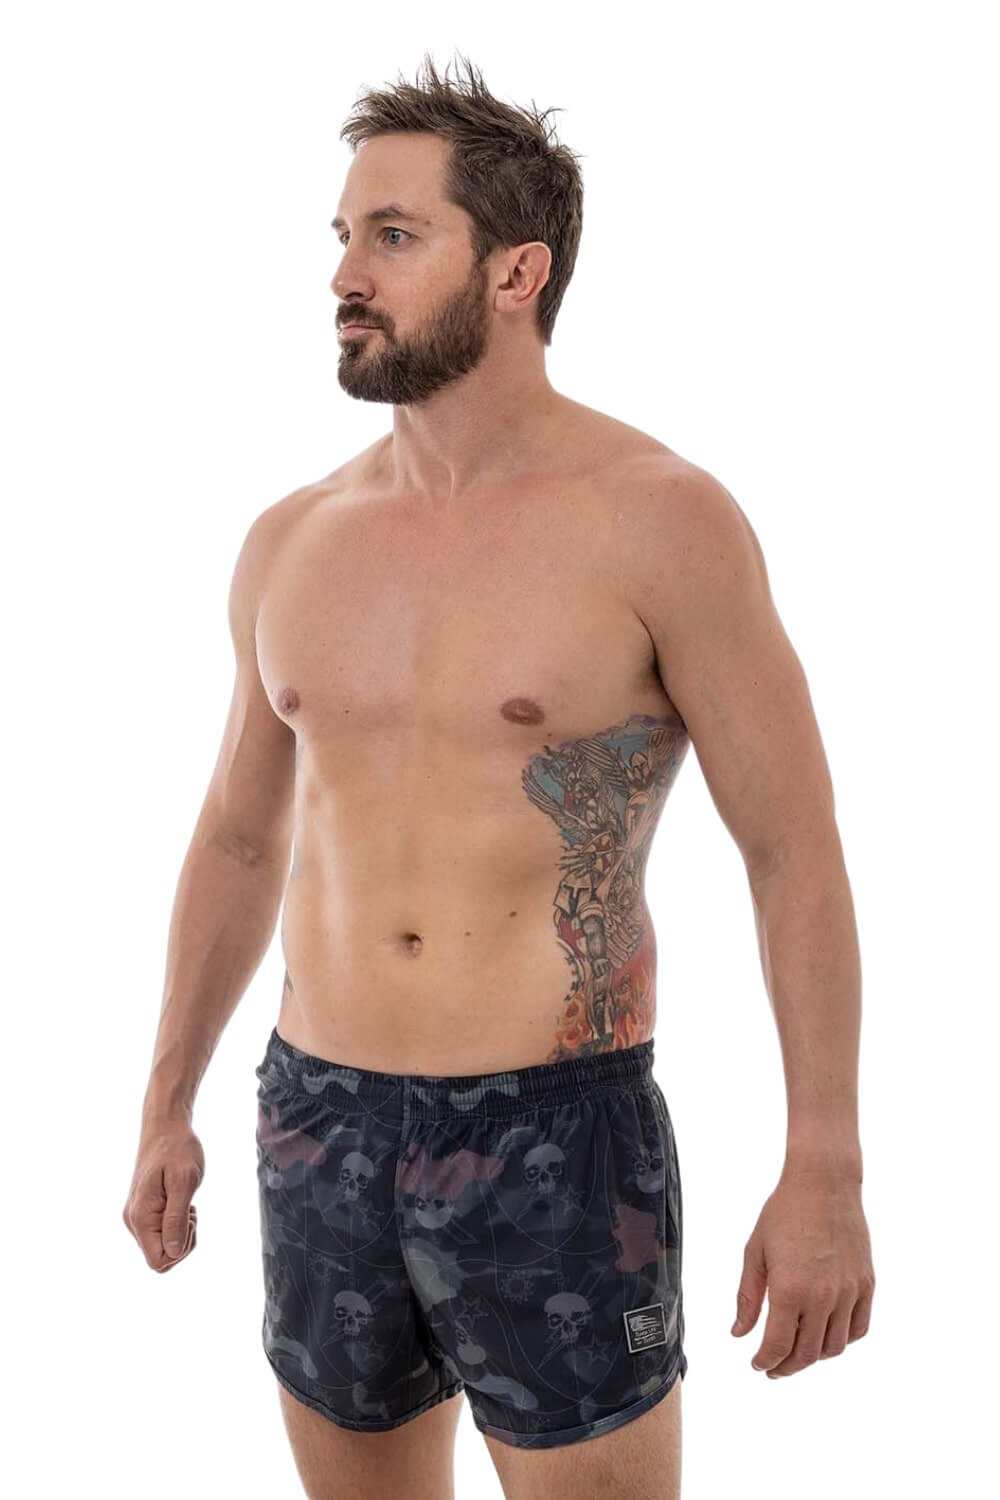 Baller Babe Shorts with Pocket - Nude Colour S-XL Activewear Clothing –  Baller Babe Active Wear